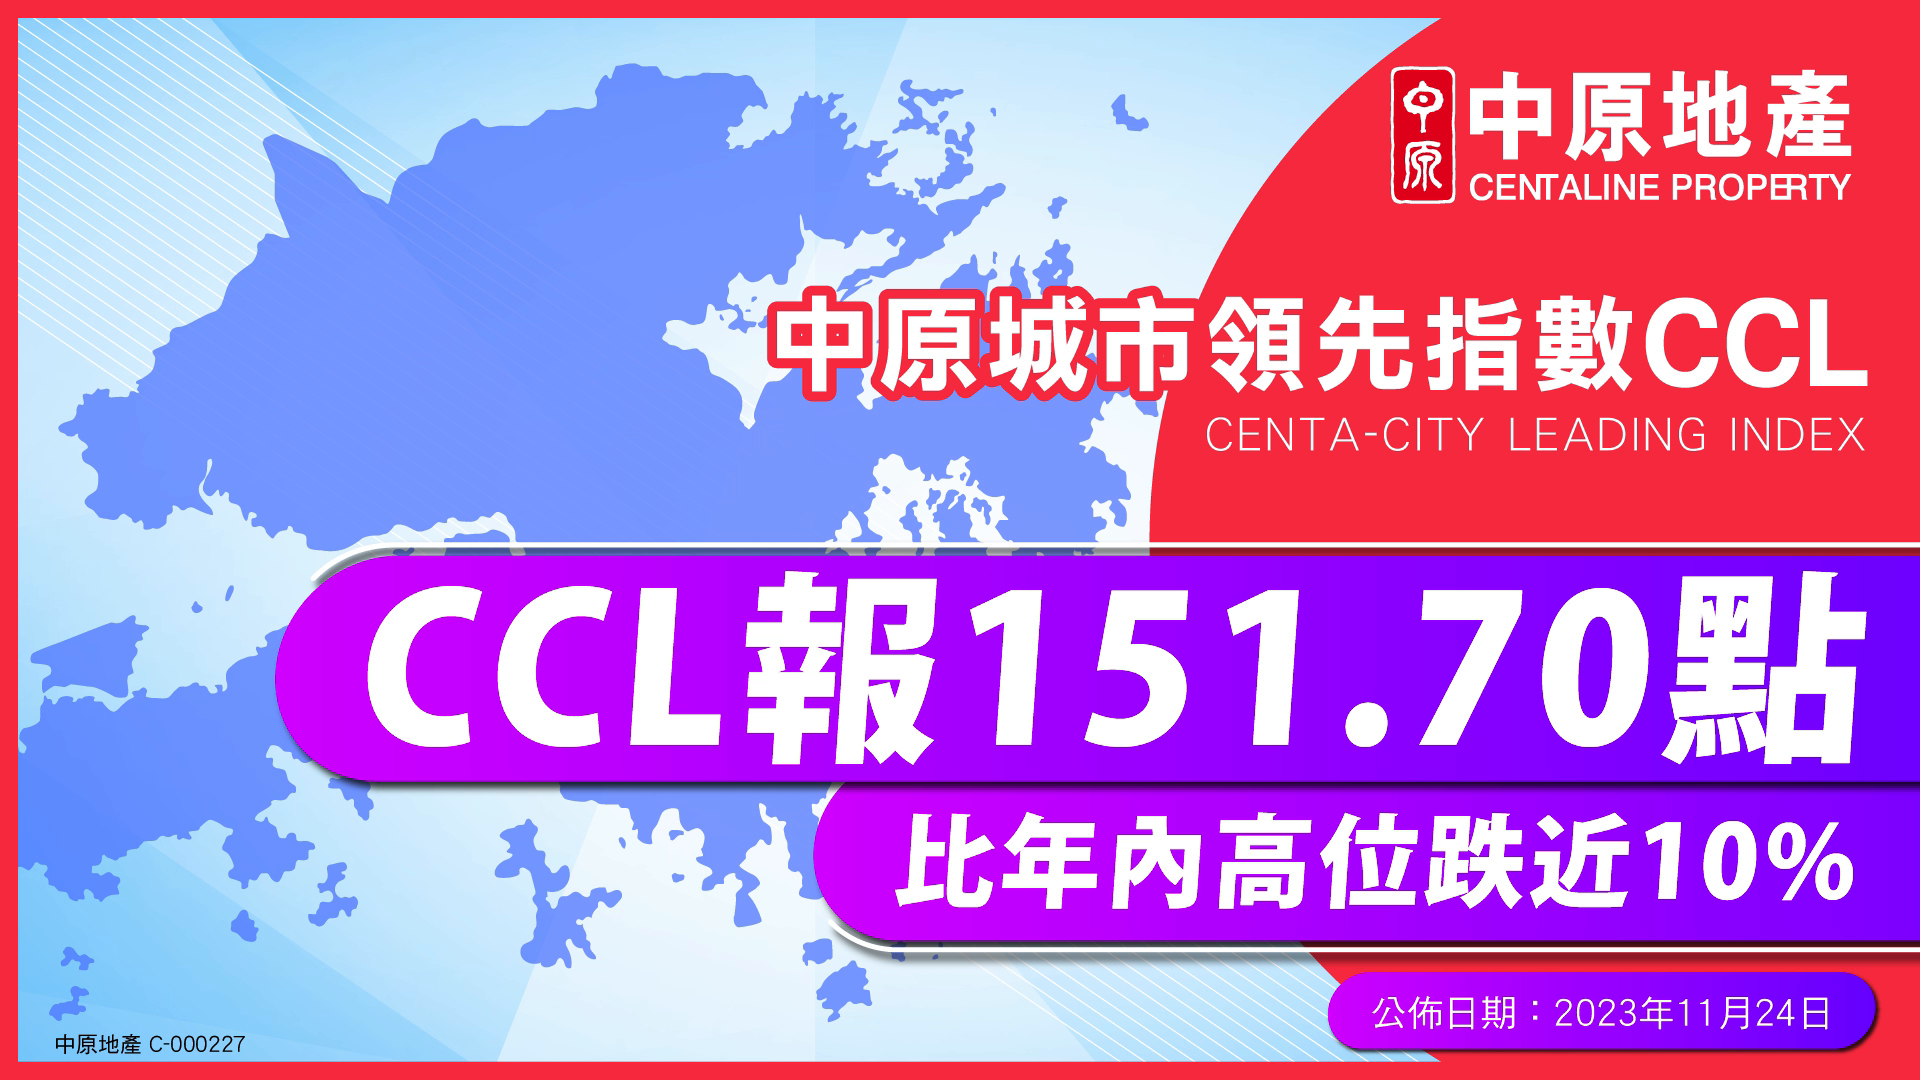 減辣後首周   CCL跌幅擴大   CCL報151.70點 比年內高位跌近10%